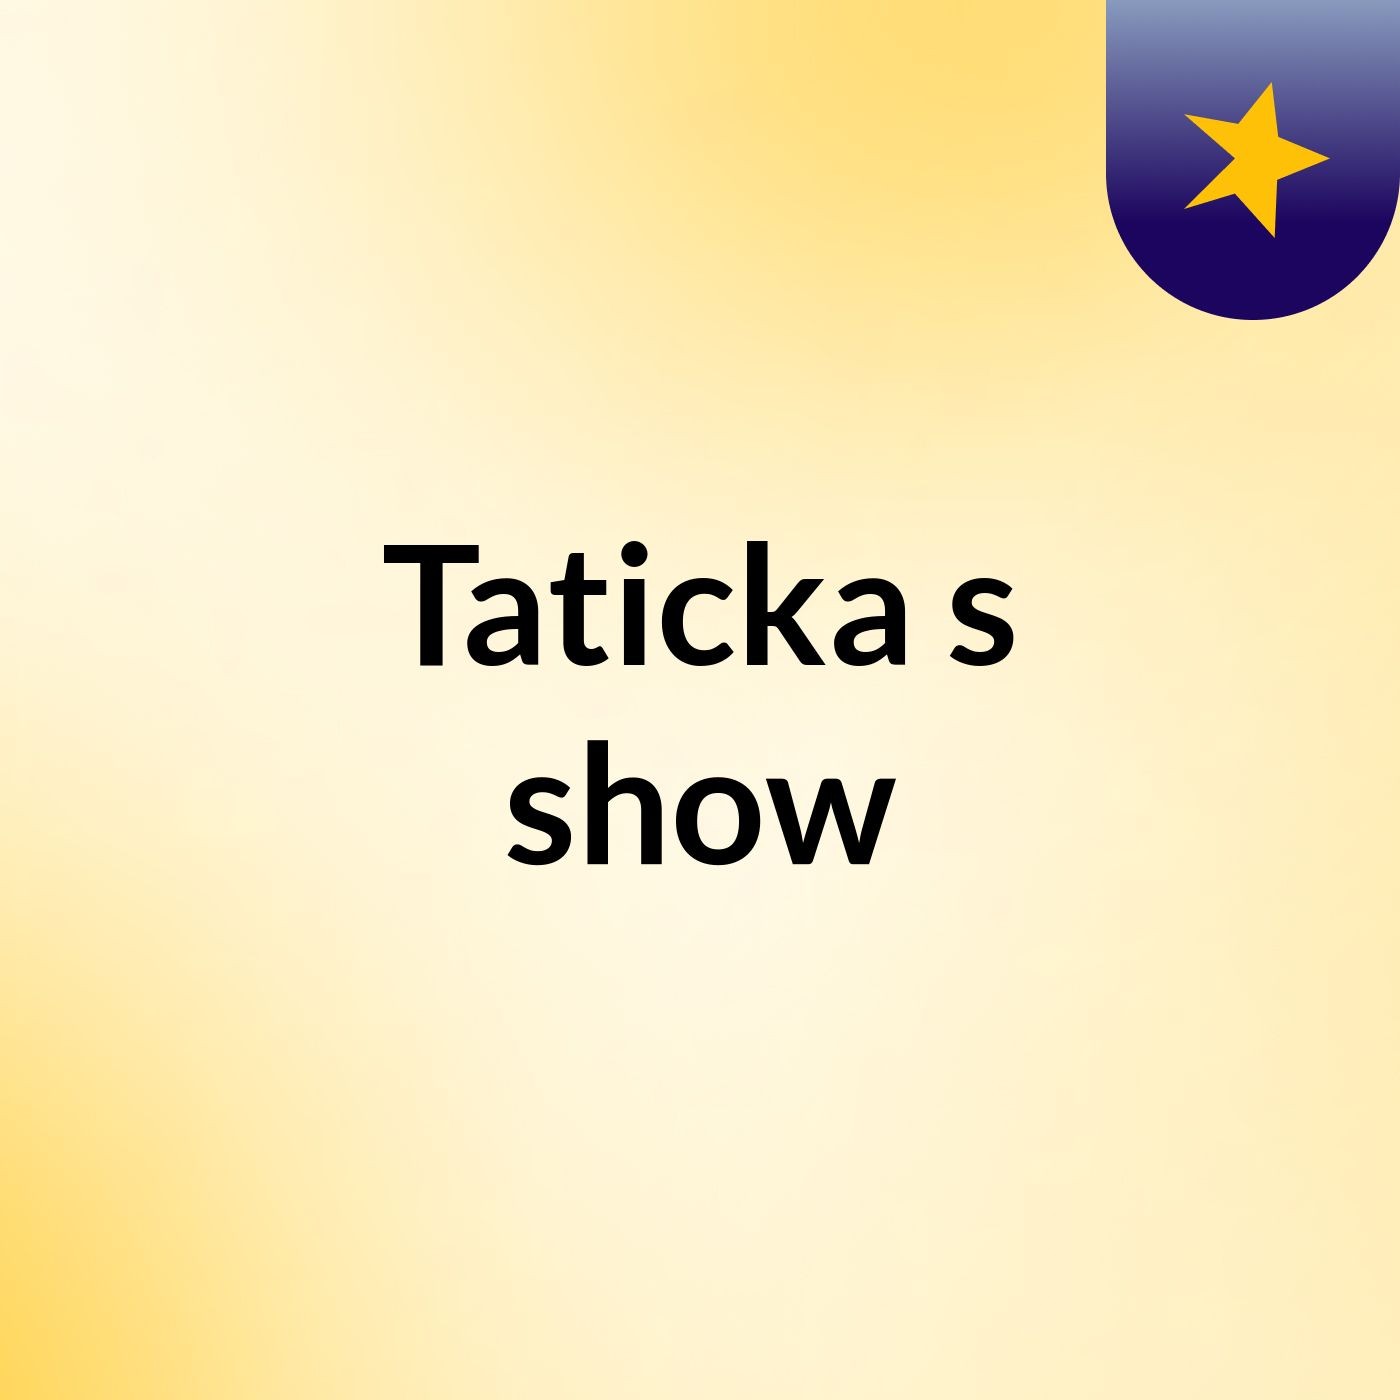 Taticka's show